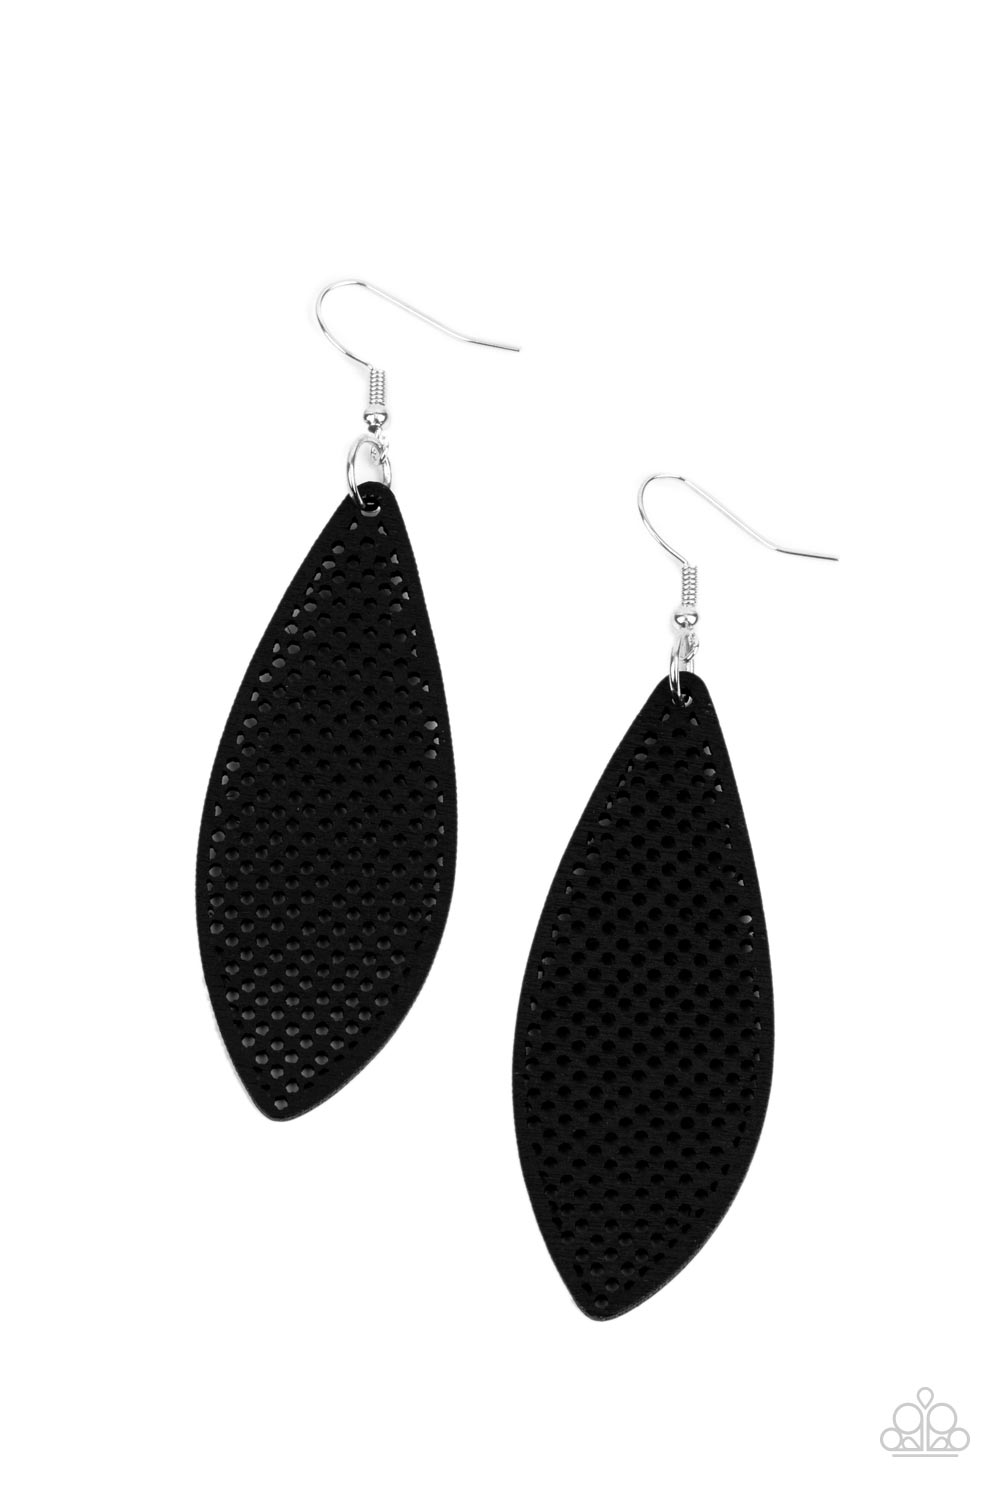 five-dollar-jewelry-surf-scene-black-earrings-paparazzi-accessories